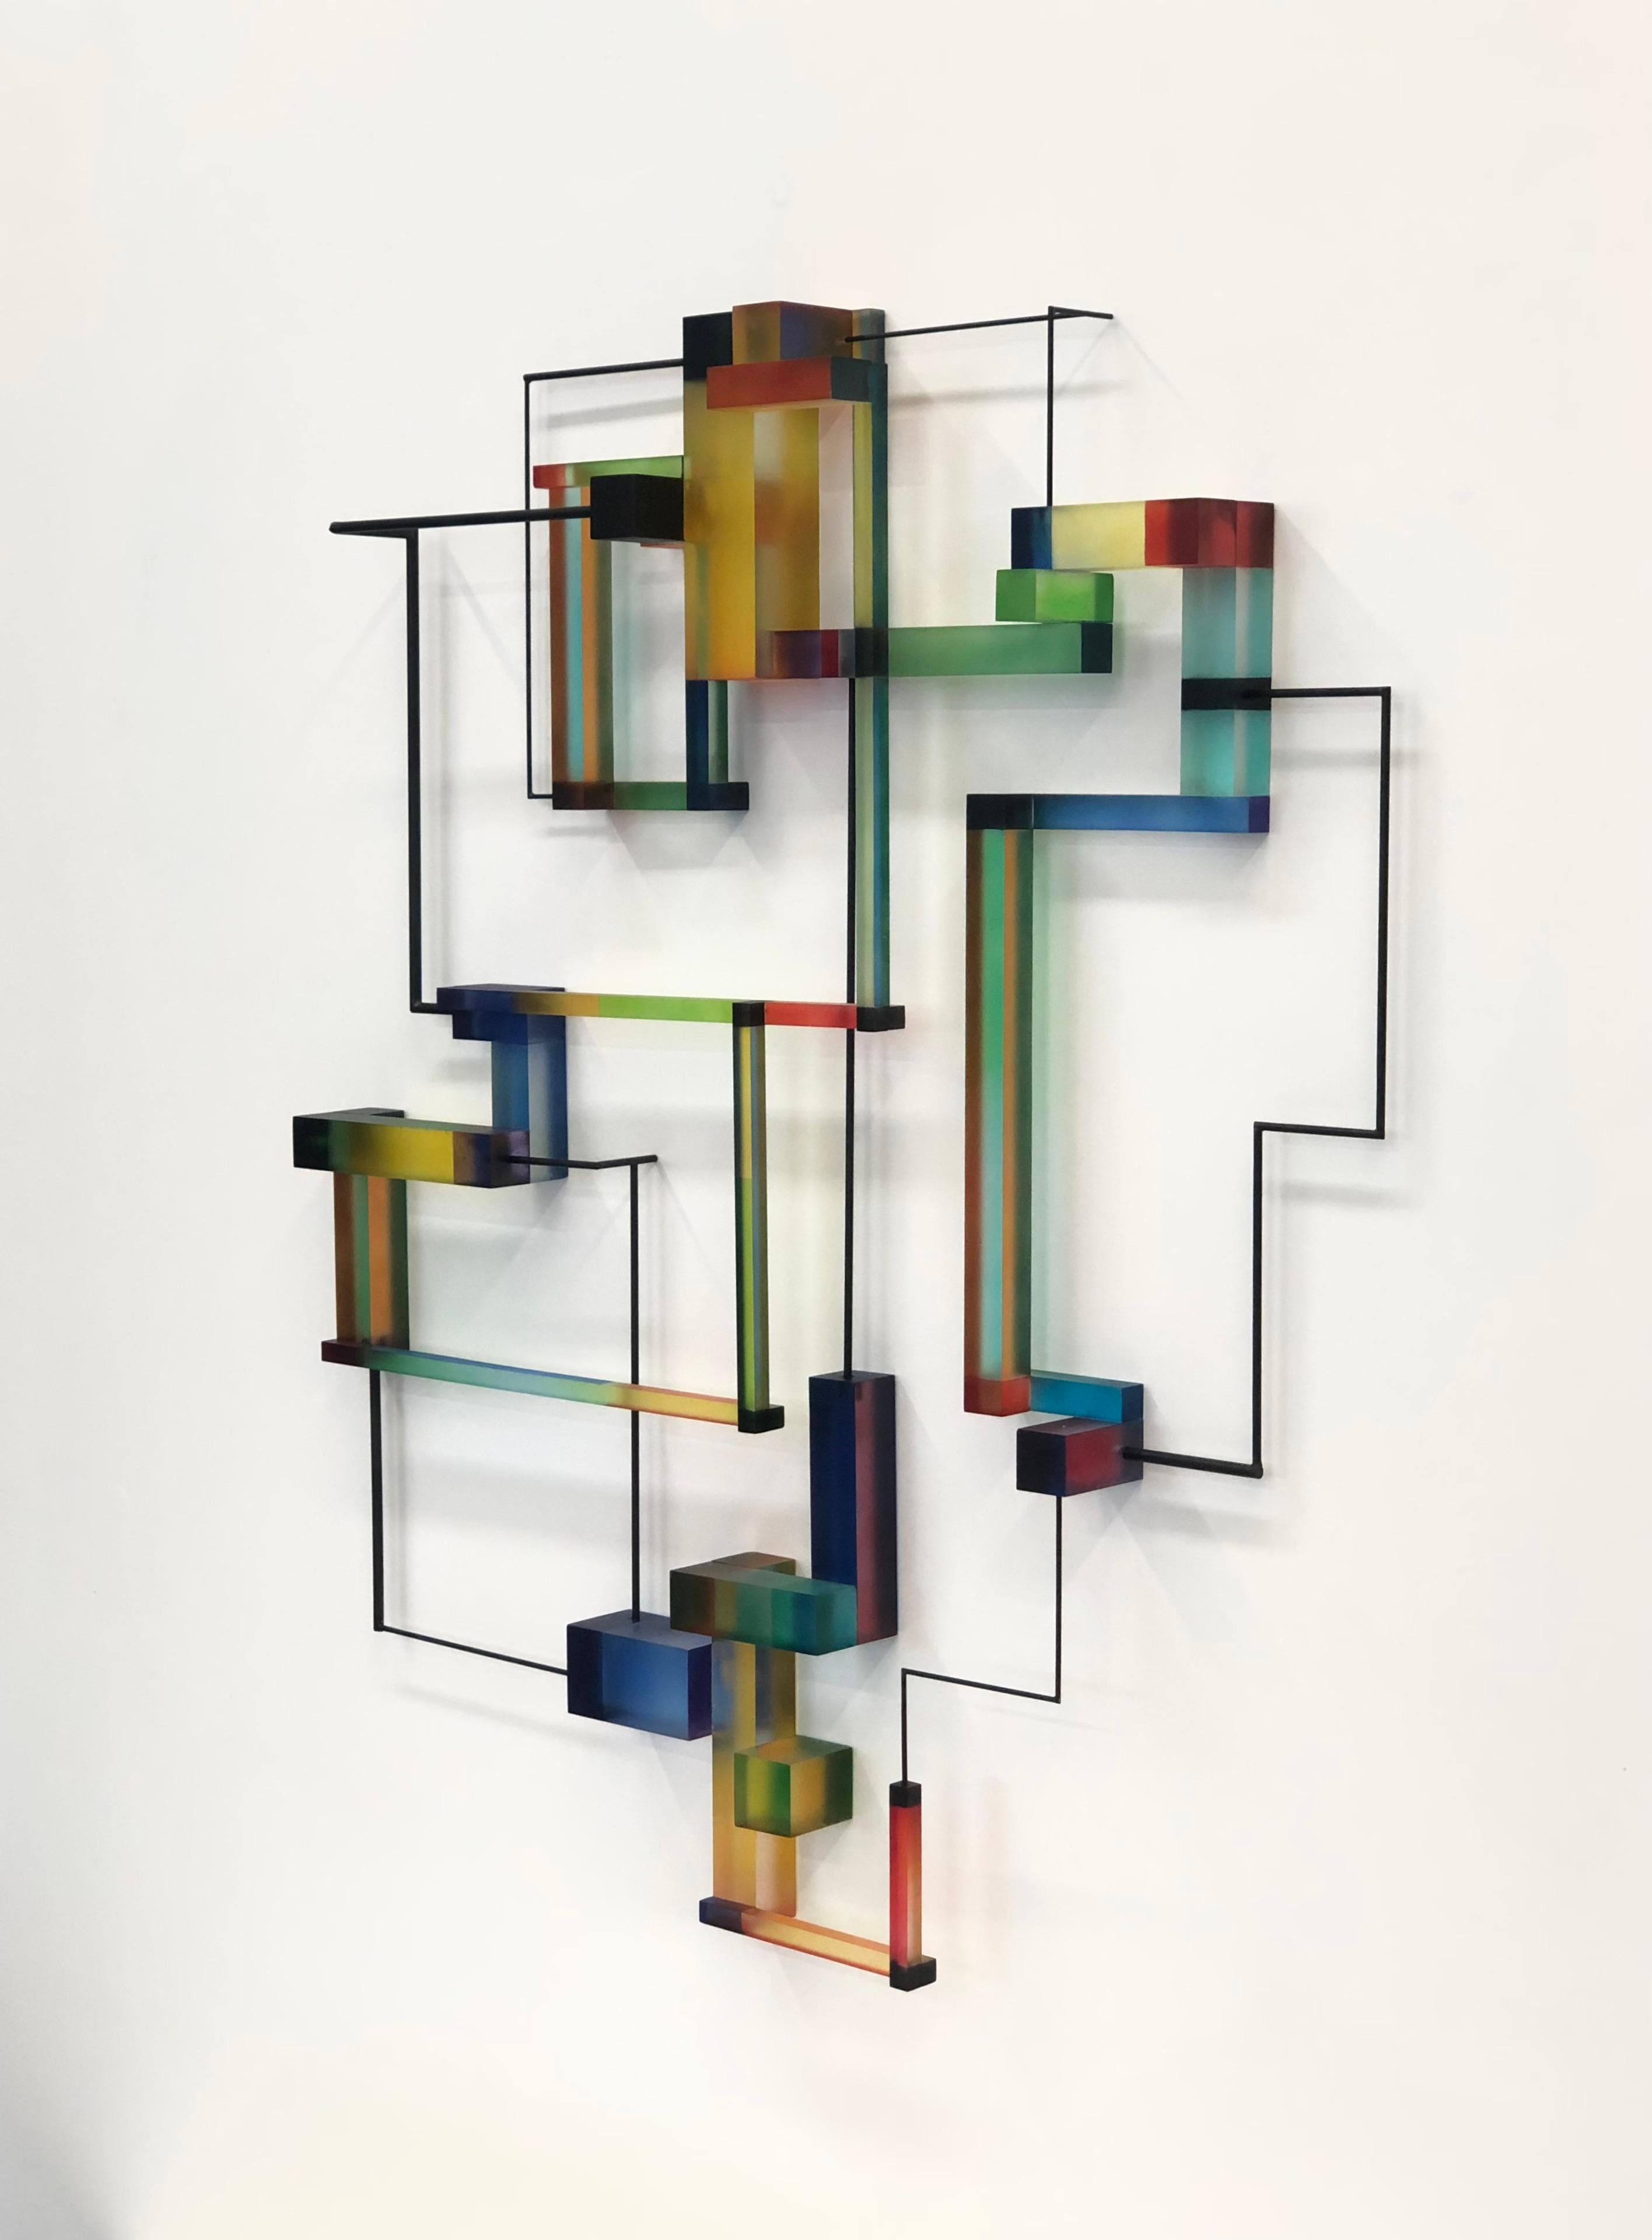 Zeitgenössische moderne abstrakte geometrische Skulptur von Marguerite II – Sculpture von Greg Chann